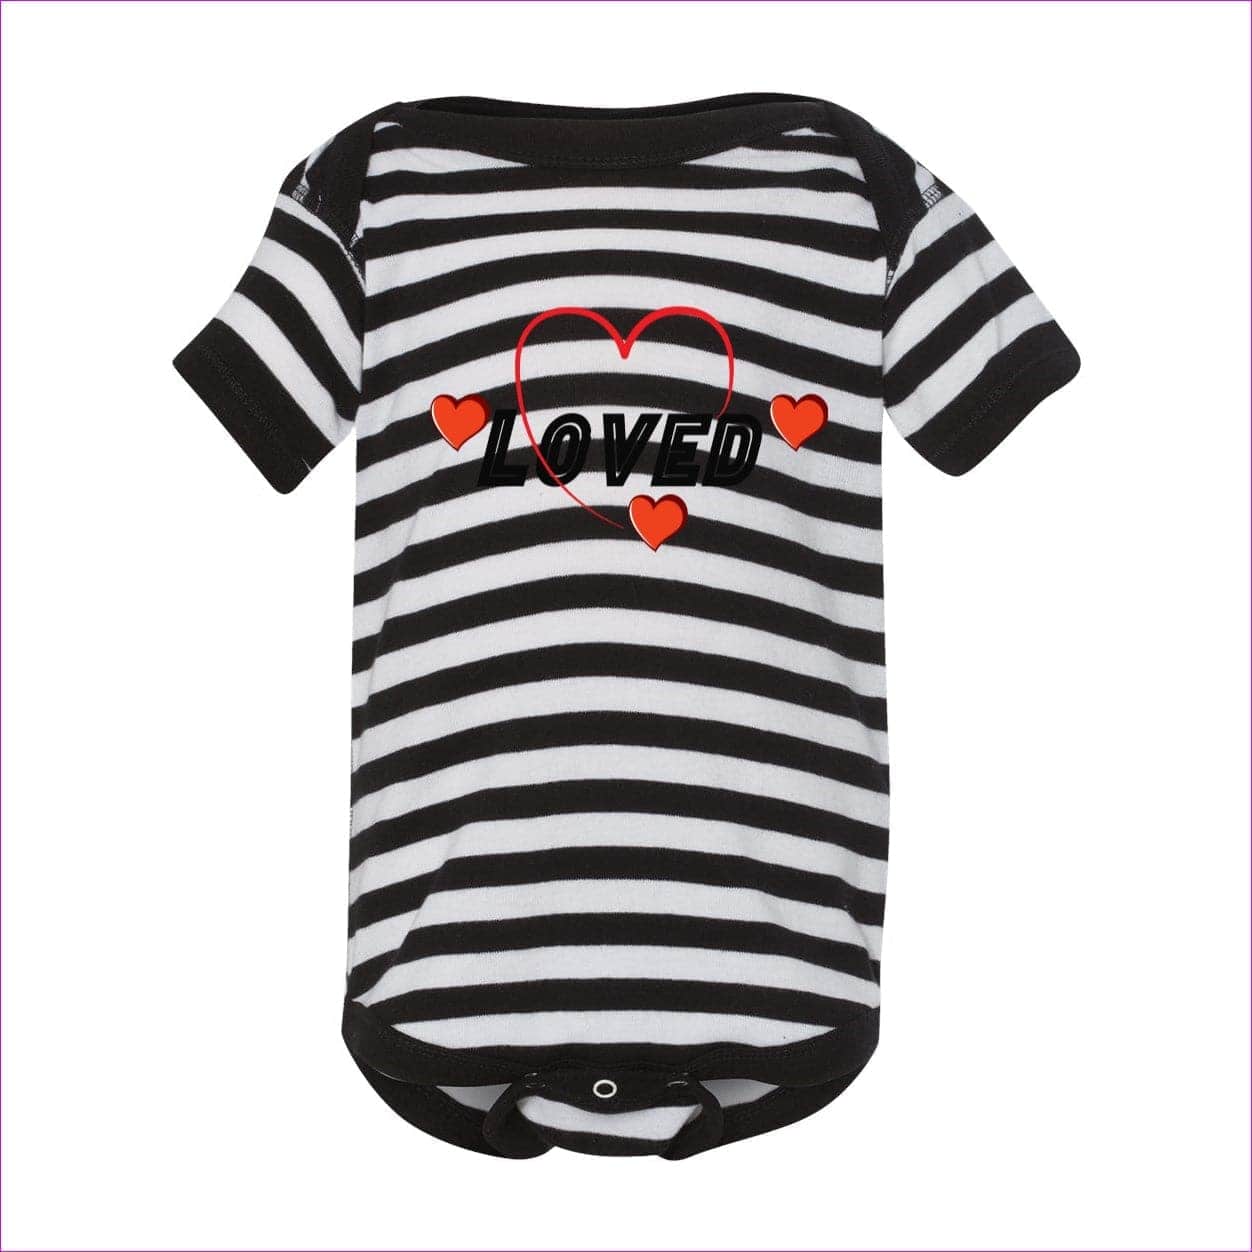 Black/ White Stripe - Loved Infant Baby Rib Bodysuit - infant onesie at TFC&H Co.